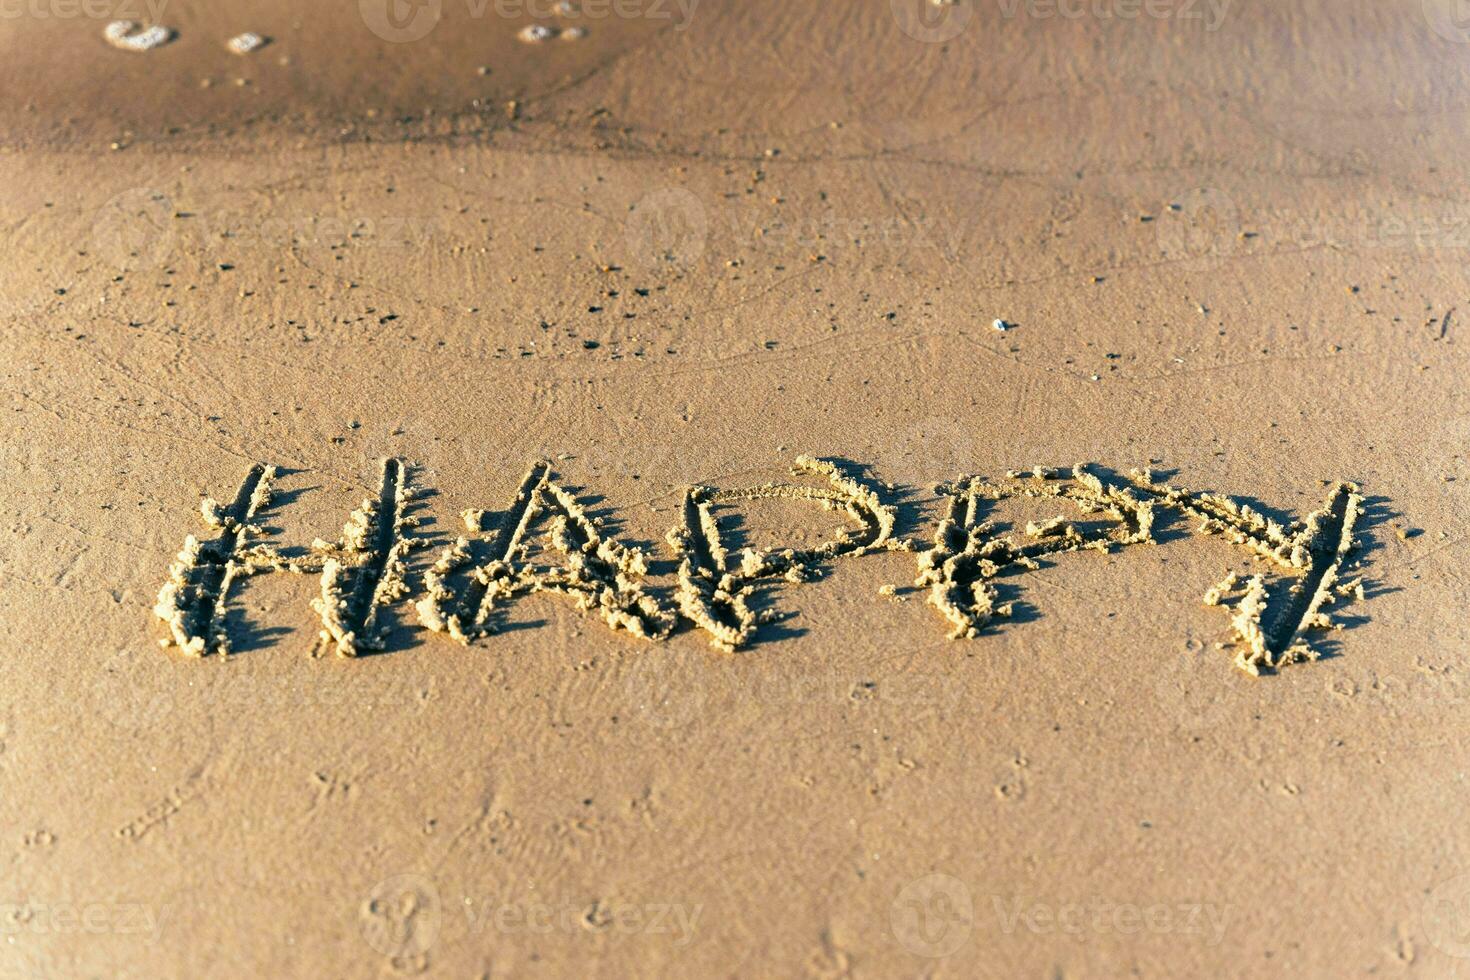 le une inscription bonheur sur le le sable de le plage photo